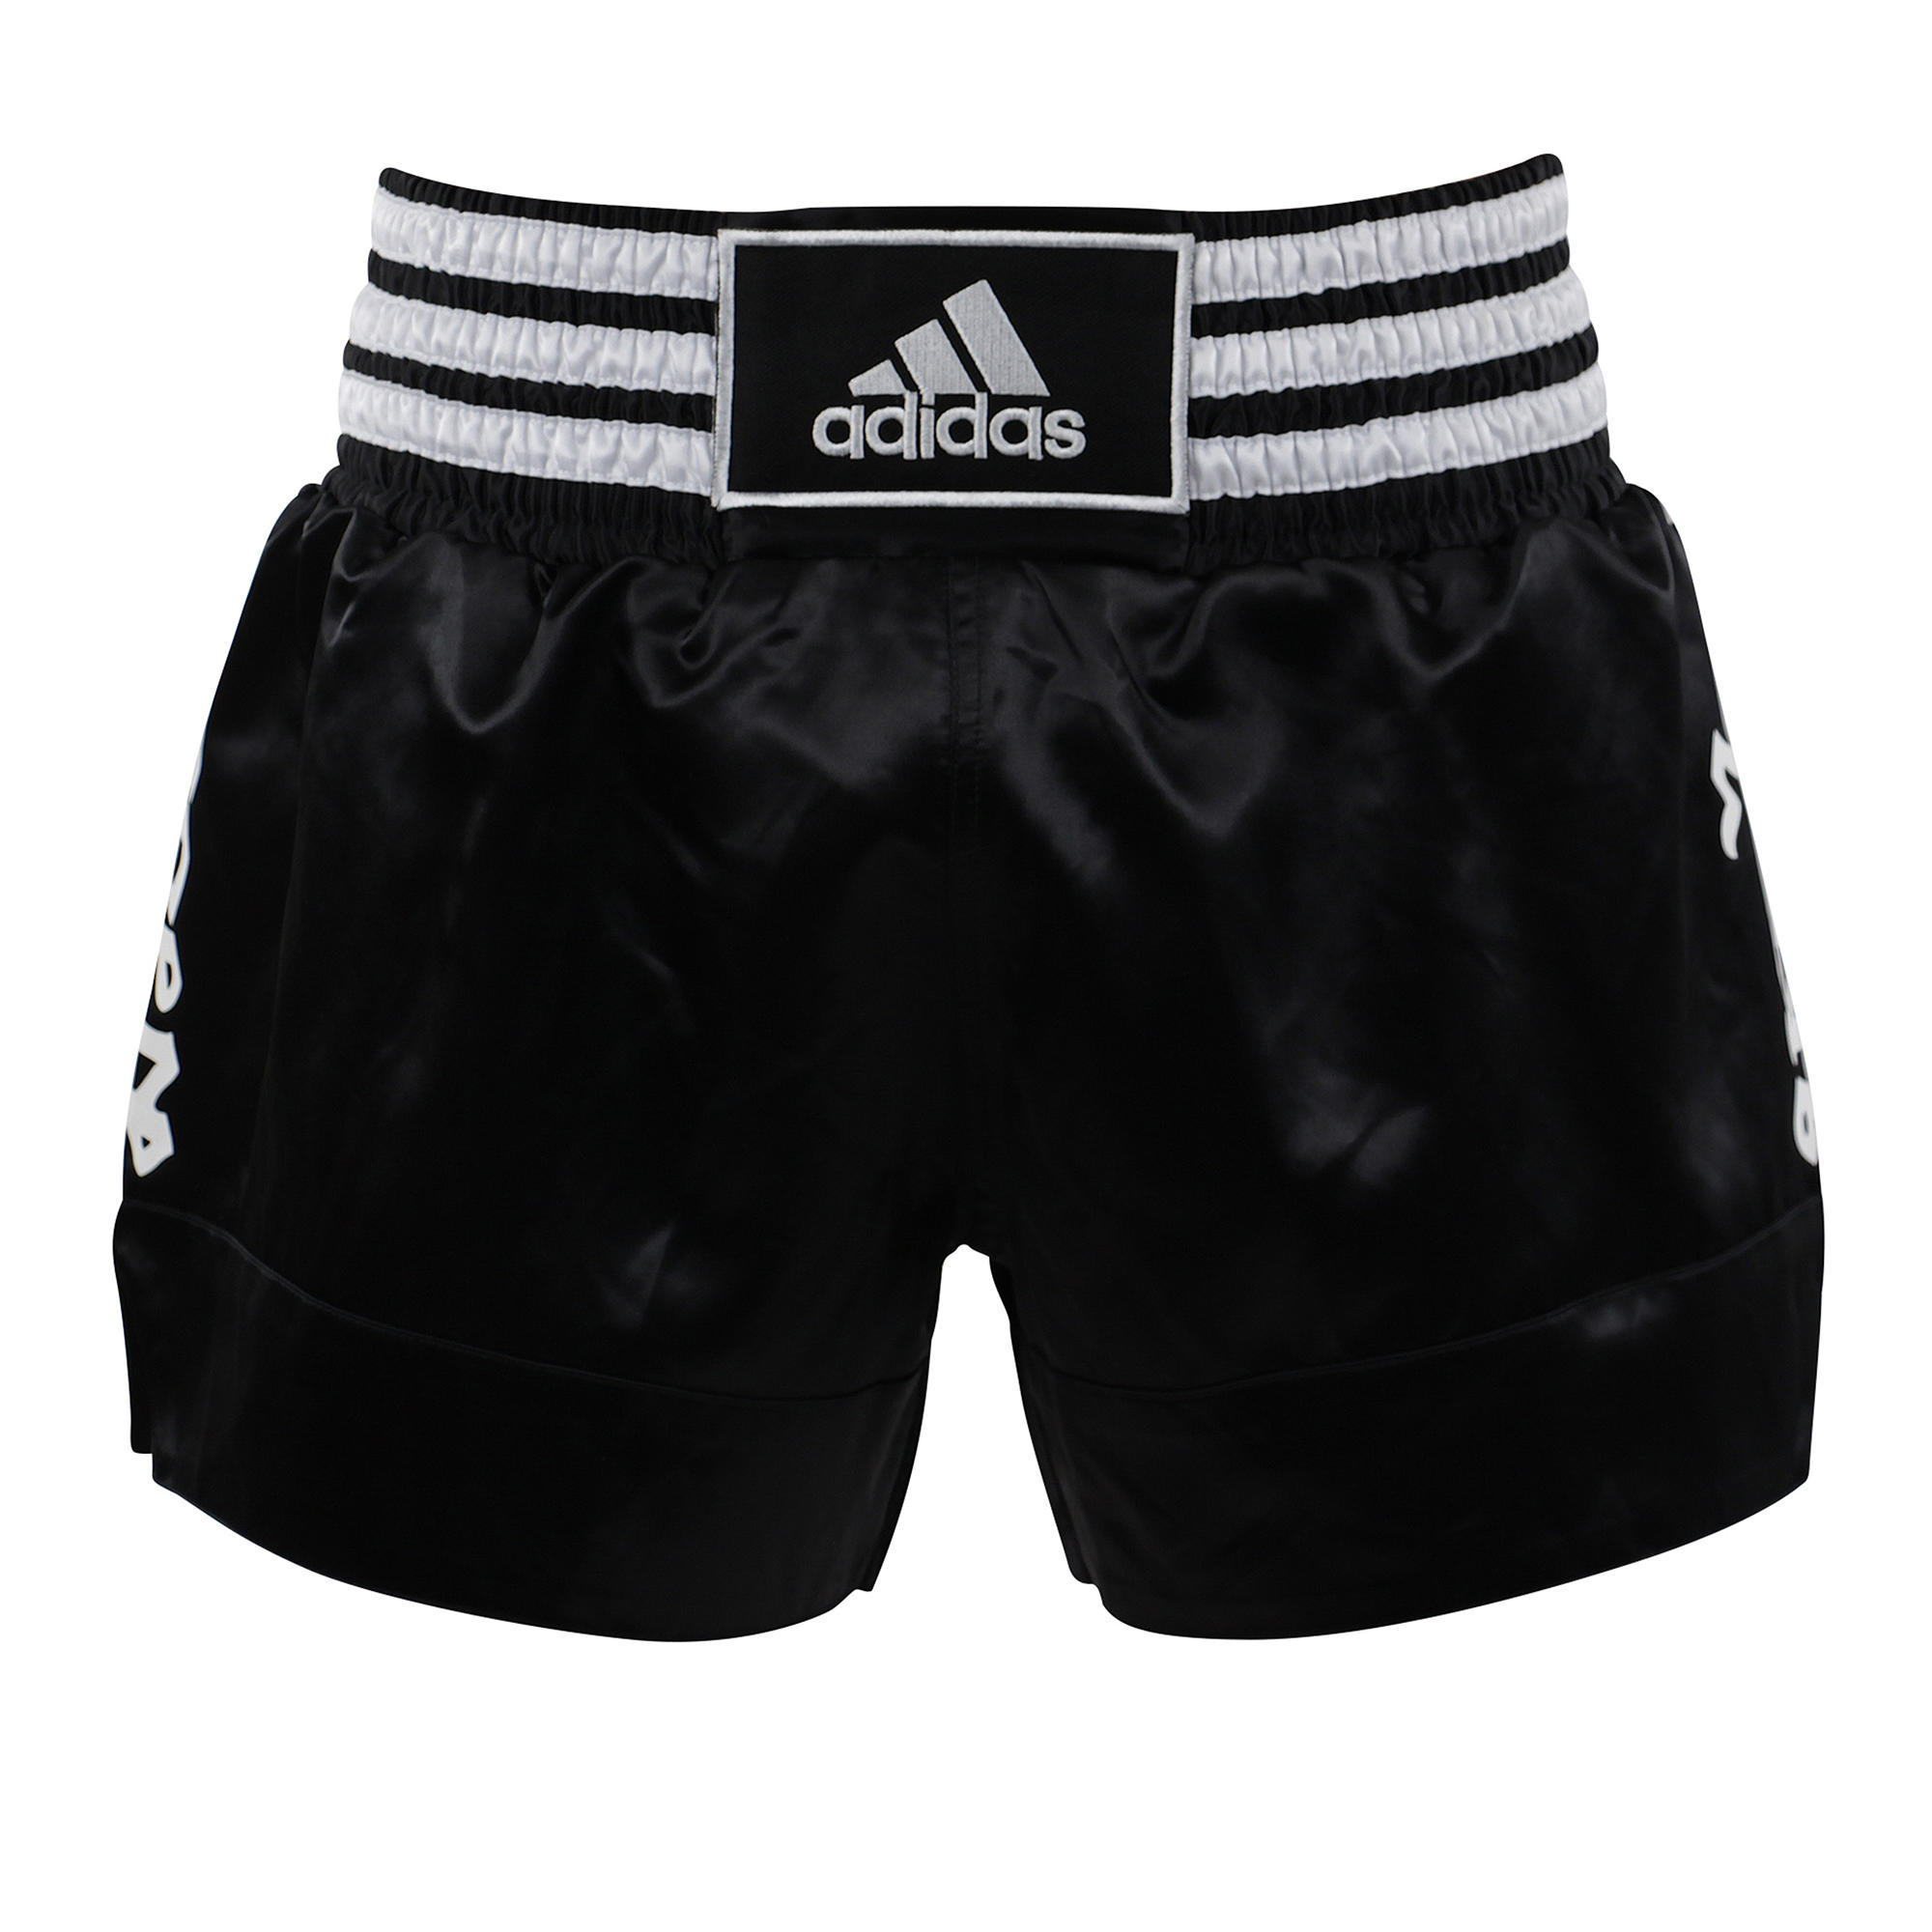 decathlon boxing shorts